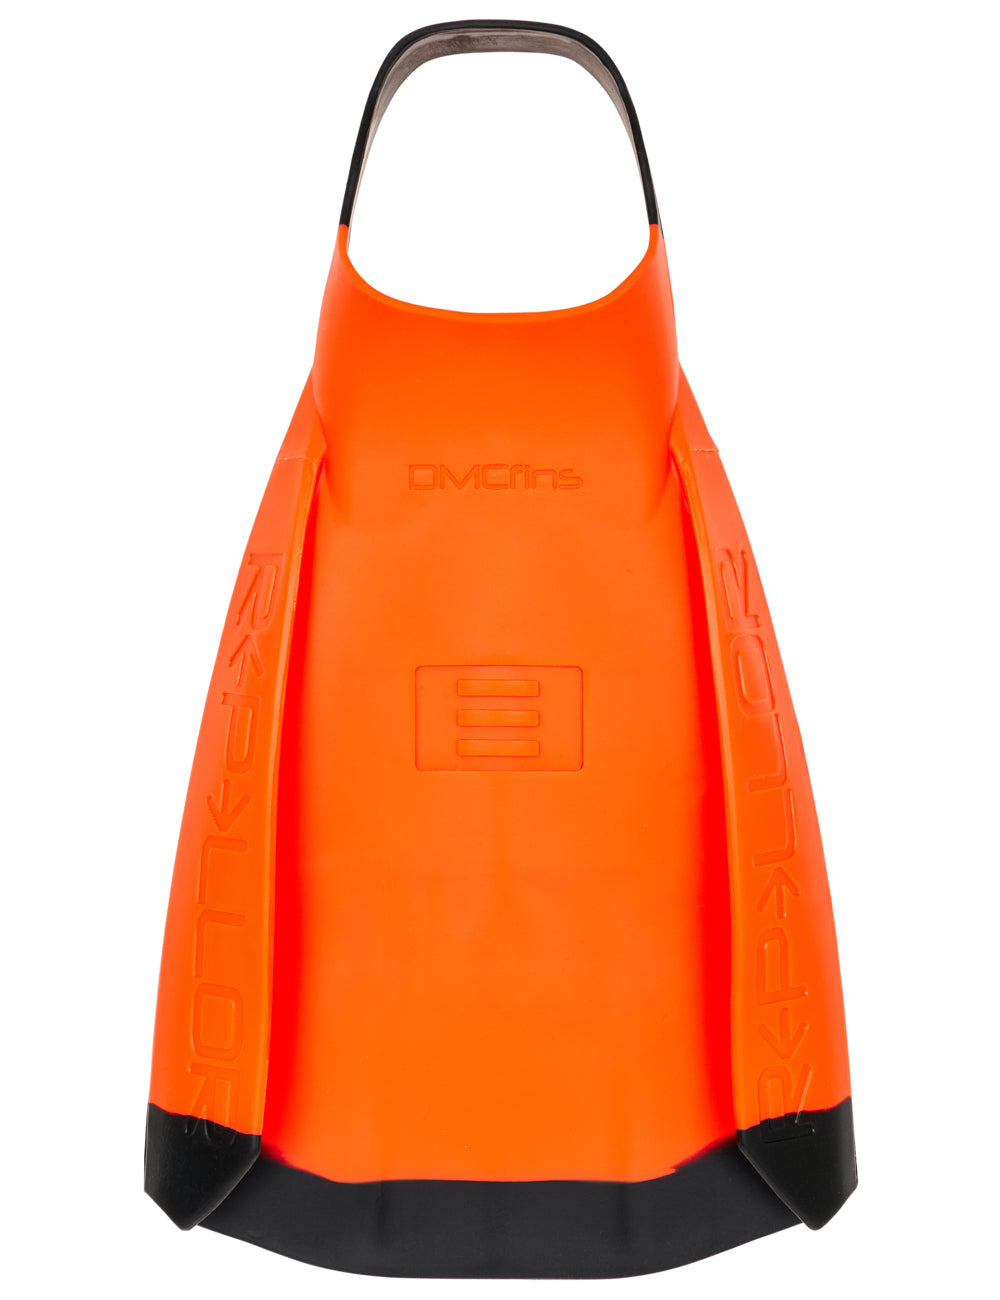 Repellor Surf Fins - Orange/Black